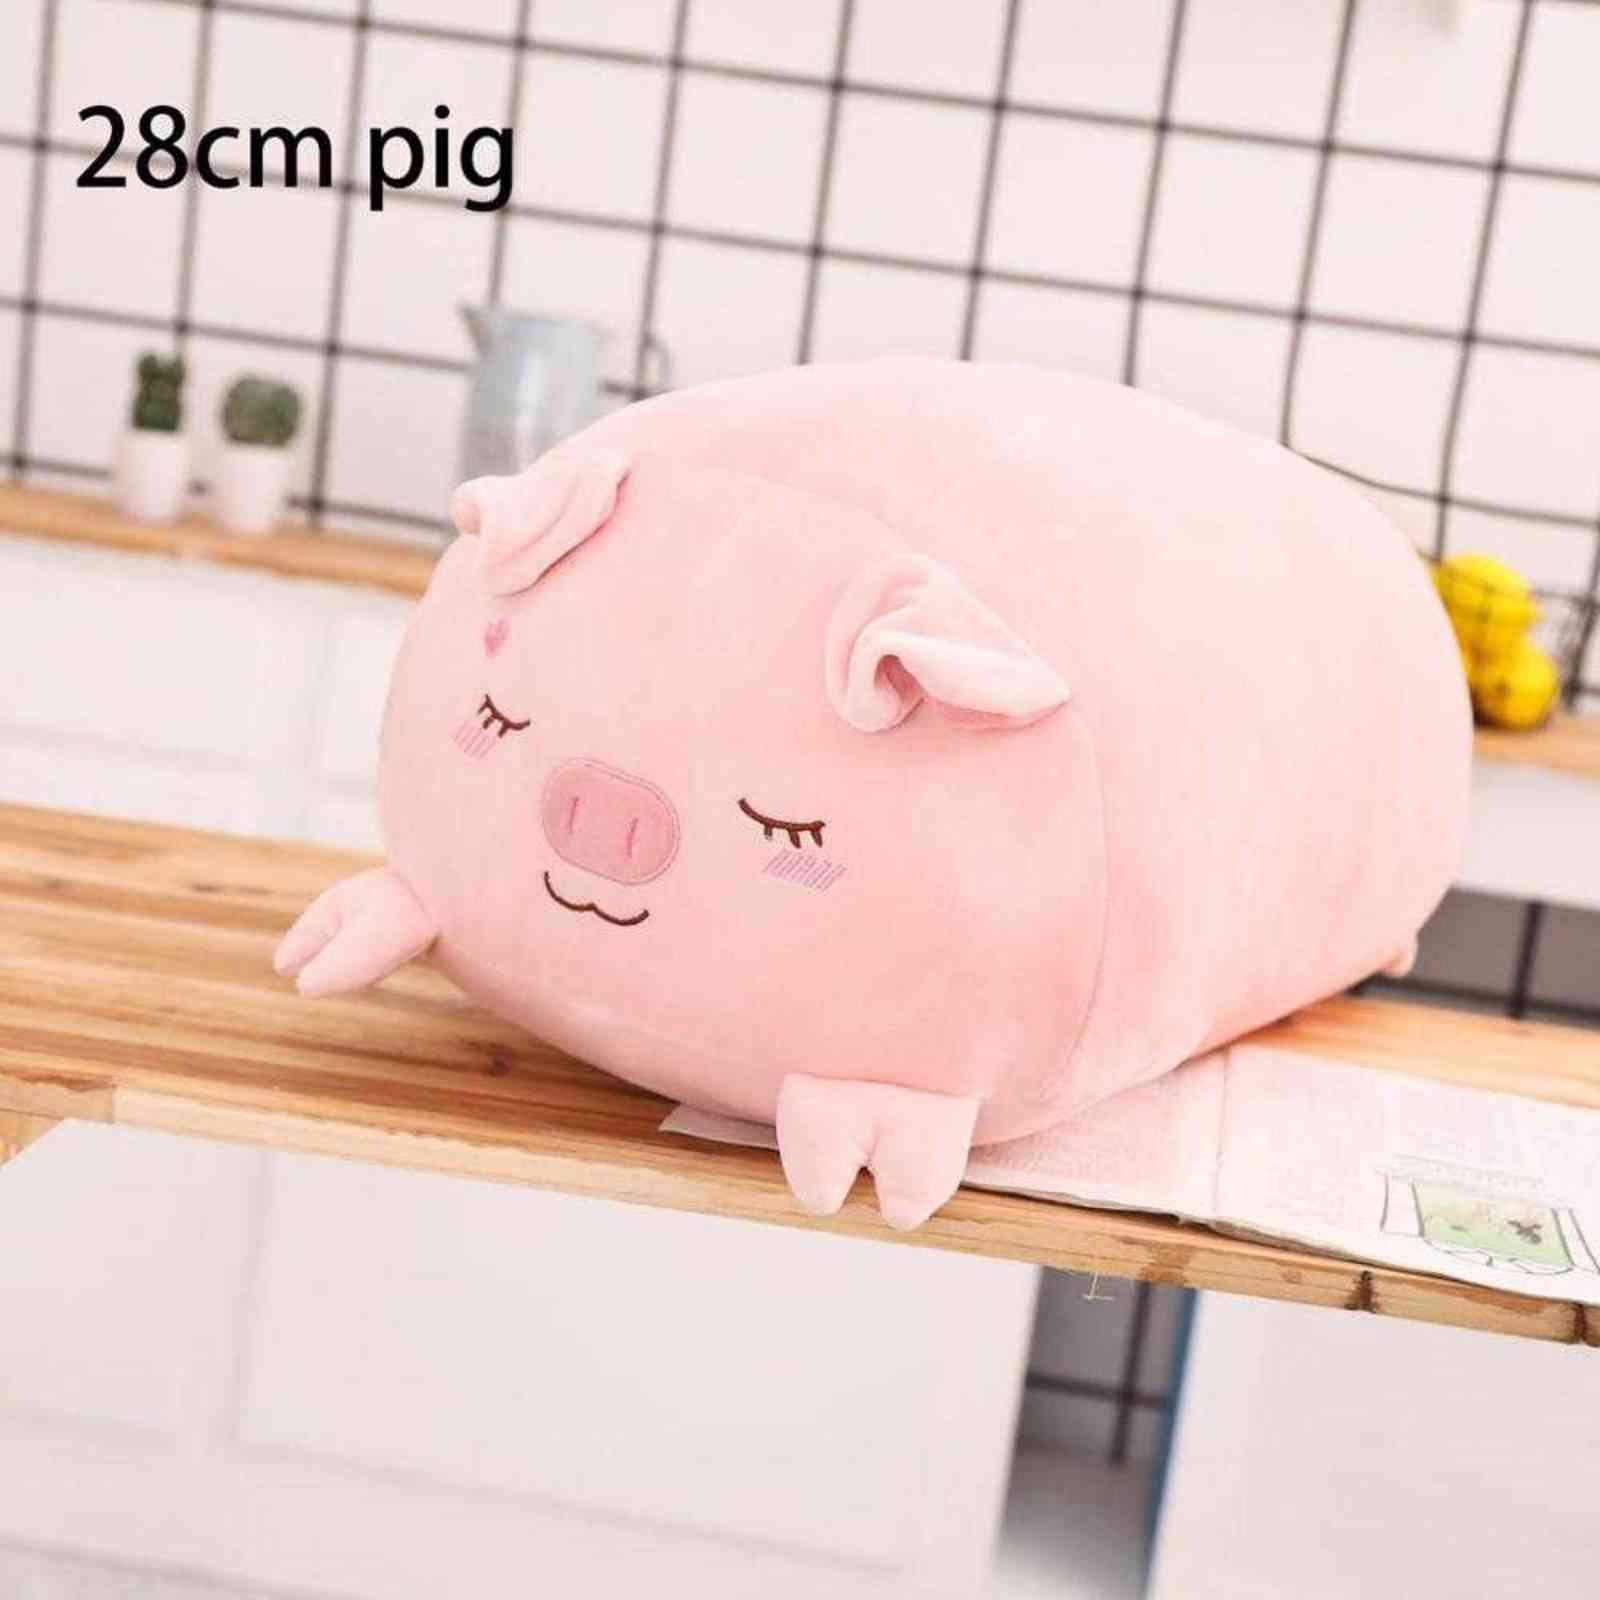 Pig 28 cm